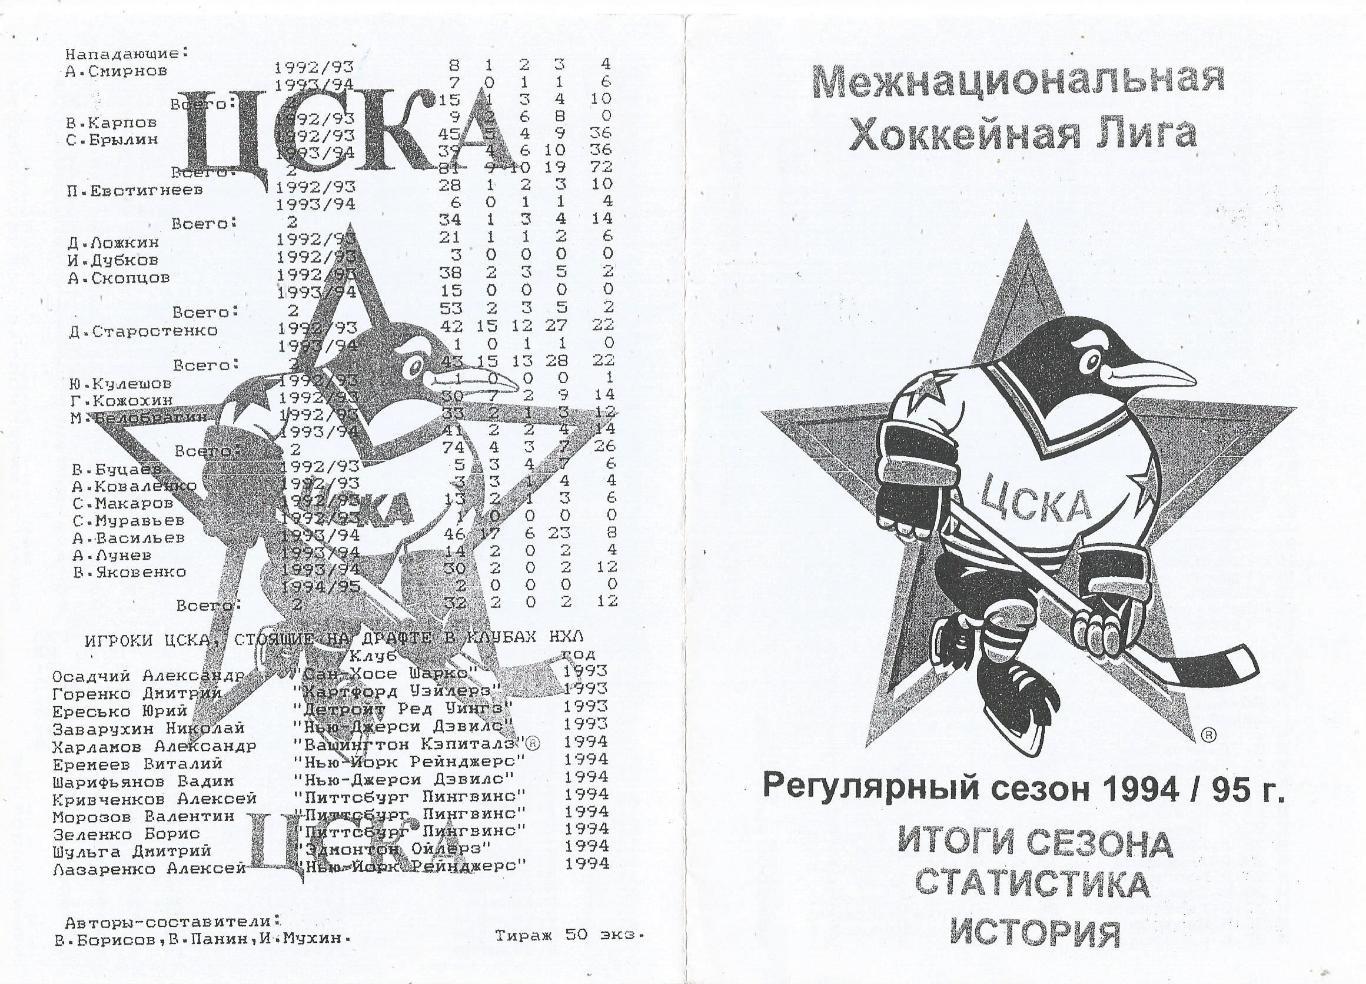 Хоккей. Регулярный сезон 1994 -1995. Итоги сезона, статистика, история